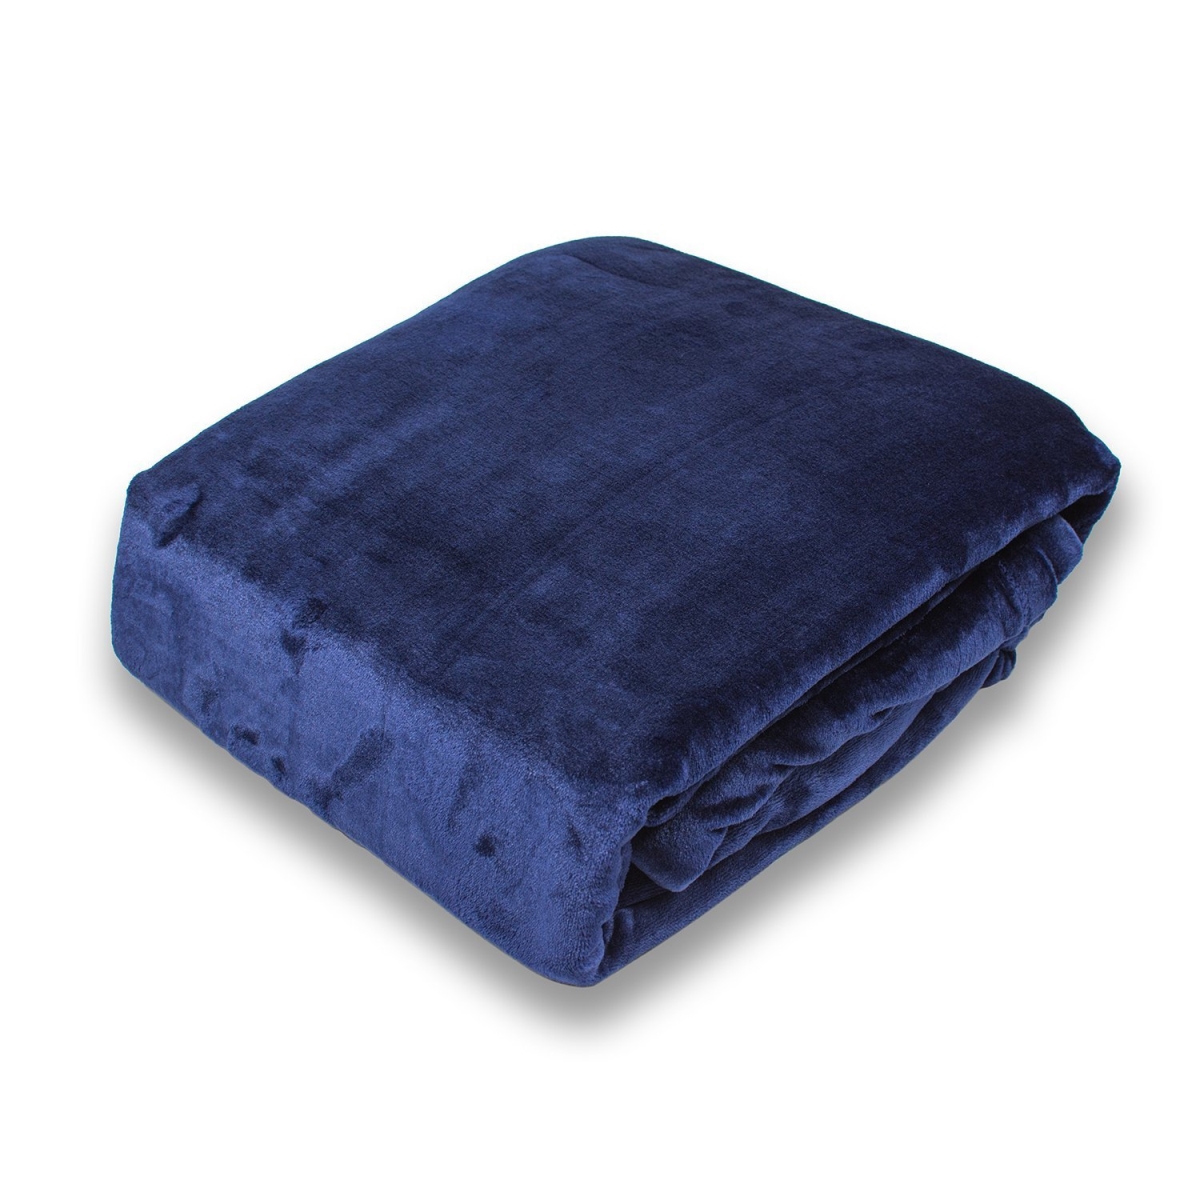 B1111068-syq-blue Velvet Plush Solid Color Blanket, Patriot Blue - Full & Queen